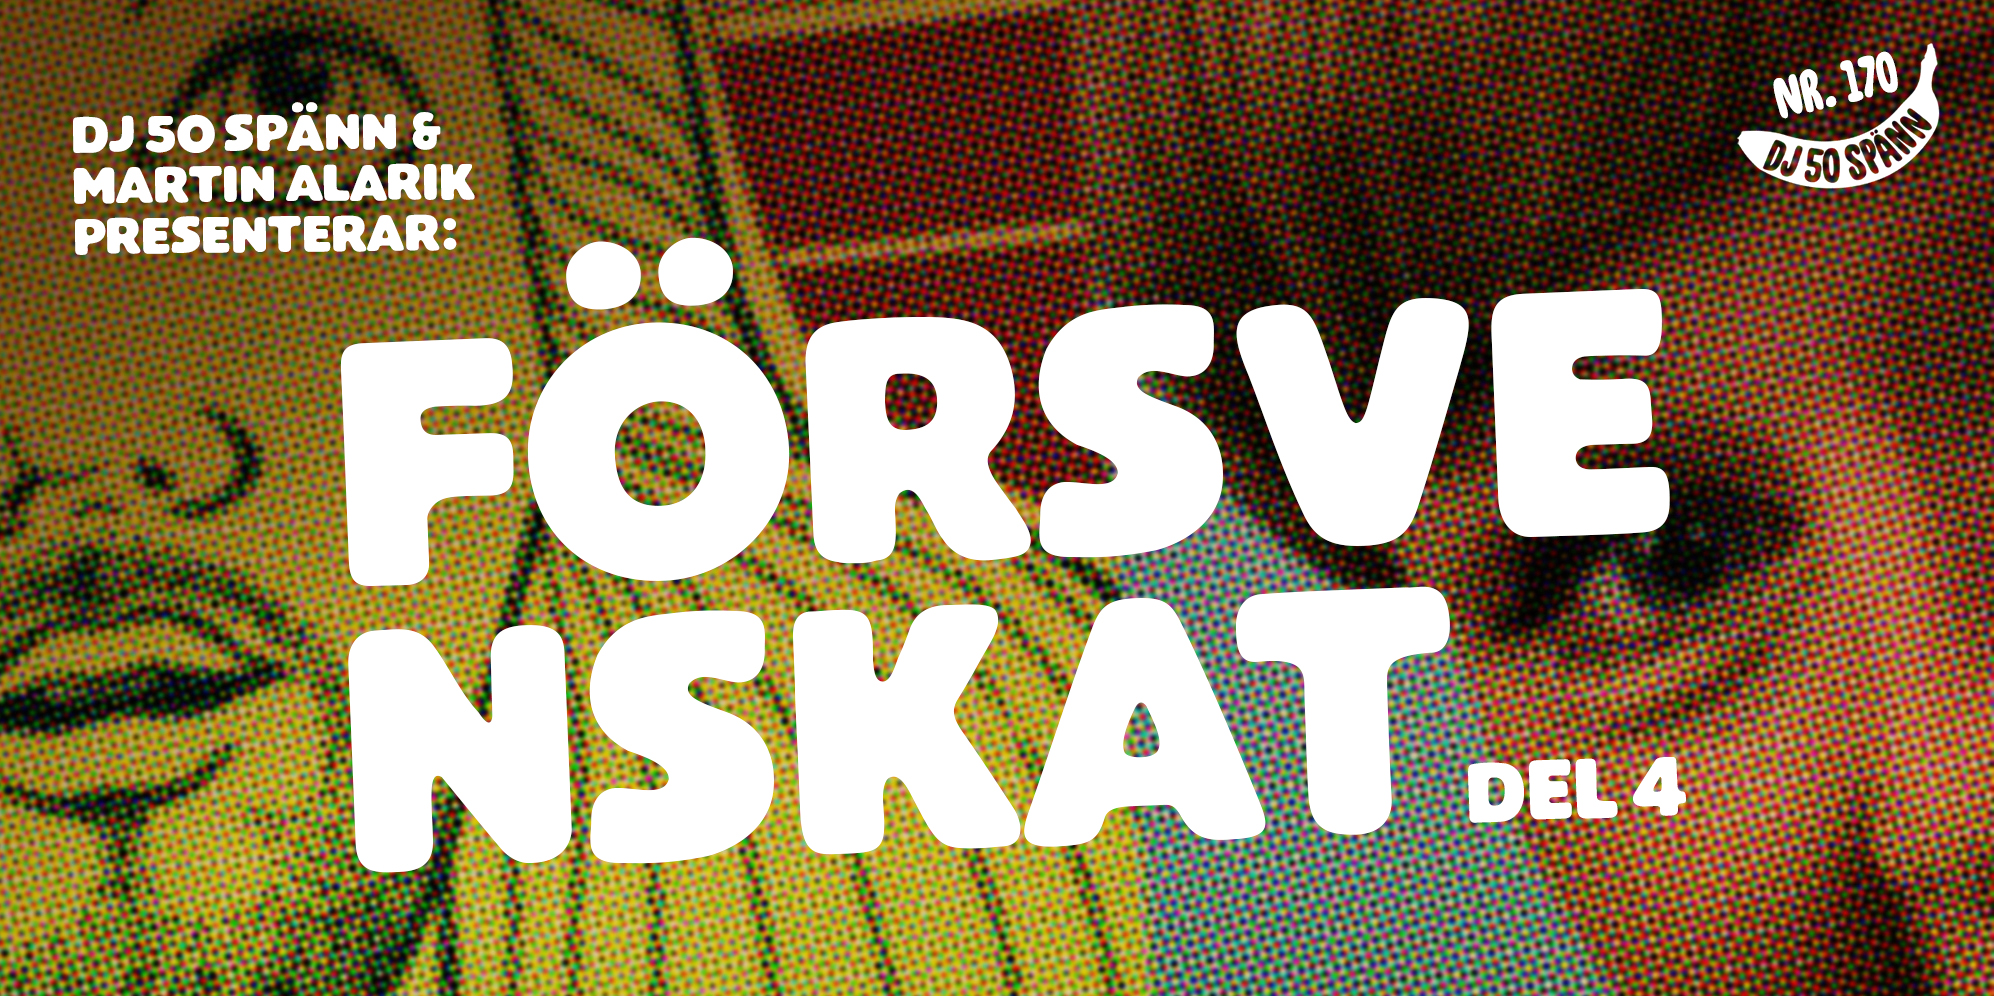 FÖRSVENSKAT! del 4 med Martin Alarik & DJ 50 Spänn